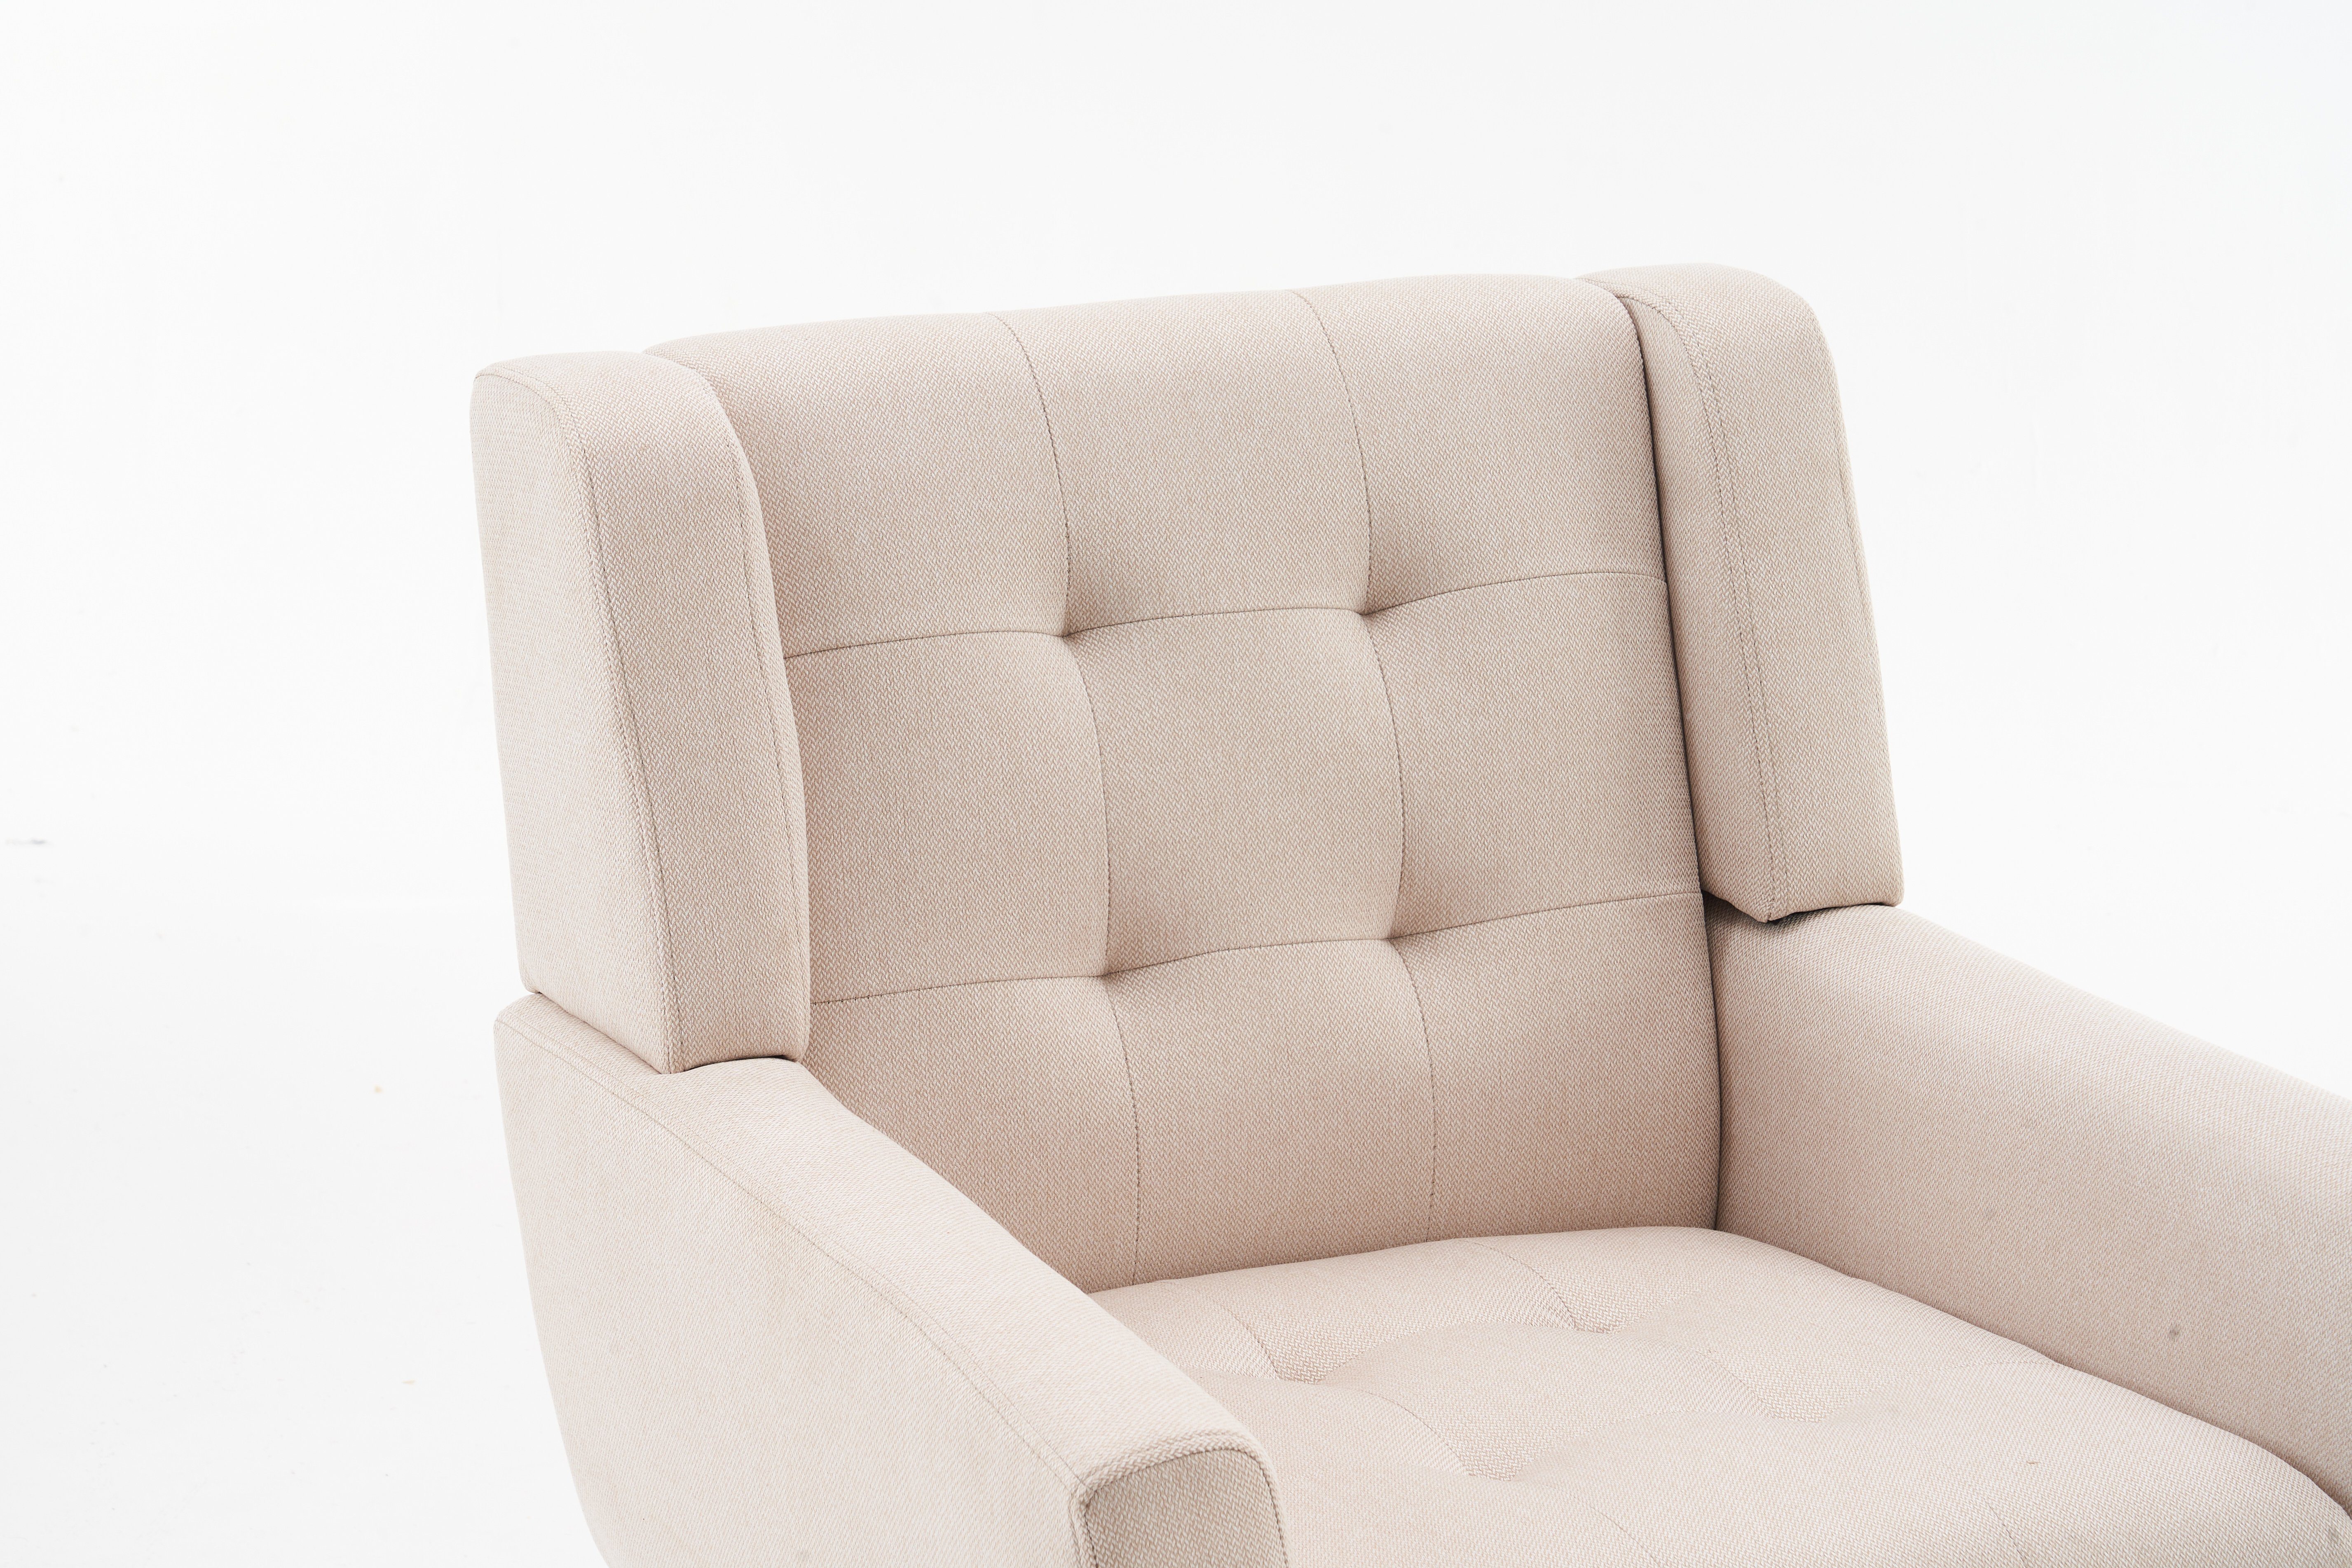 DOTMALL Armlehnstuhl Mid Century Modern Nussbaum Beige und Fabric Armlehnstuhl